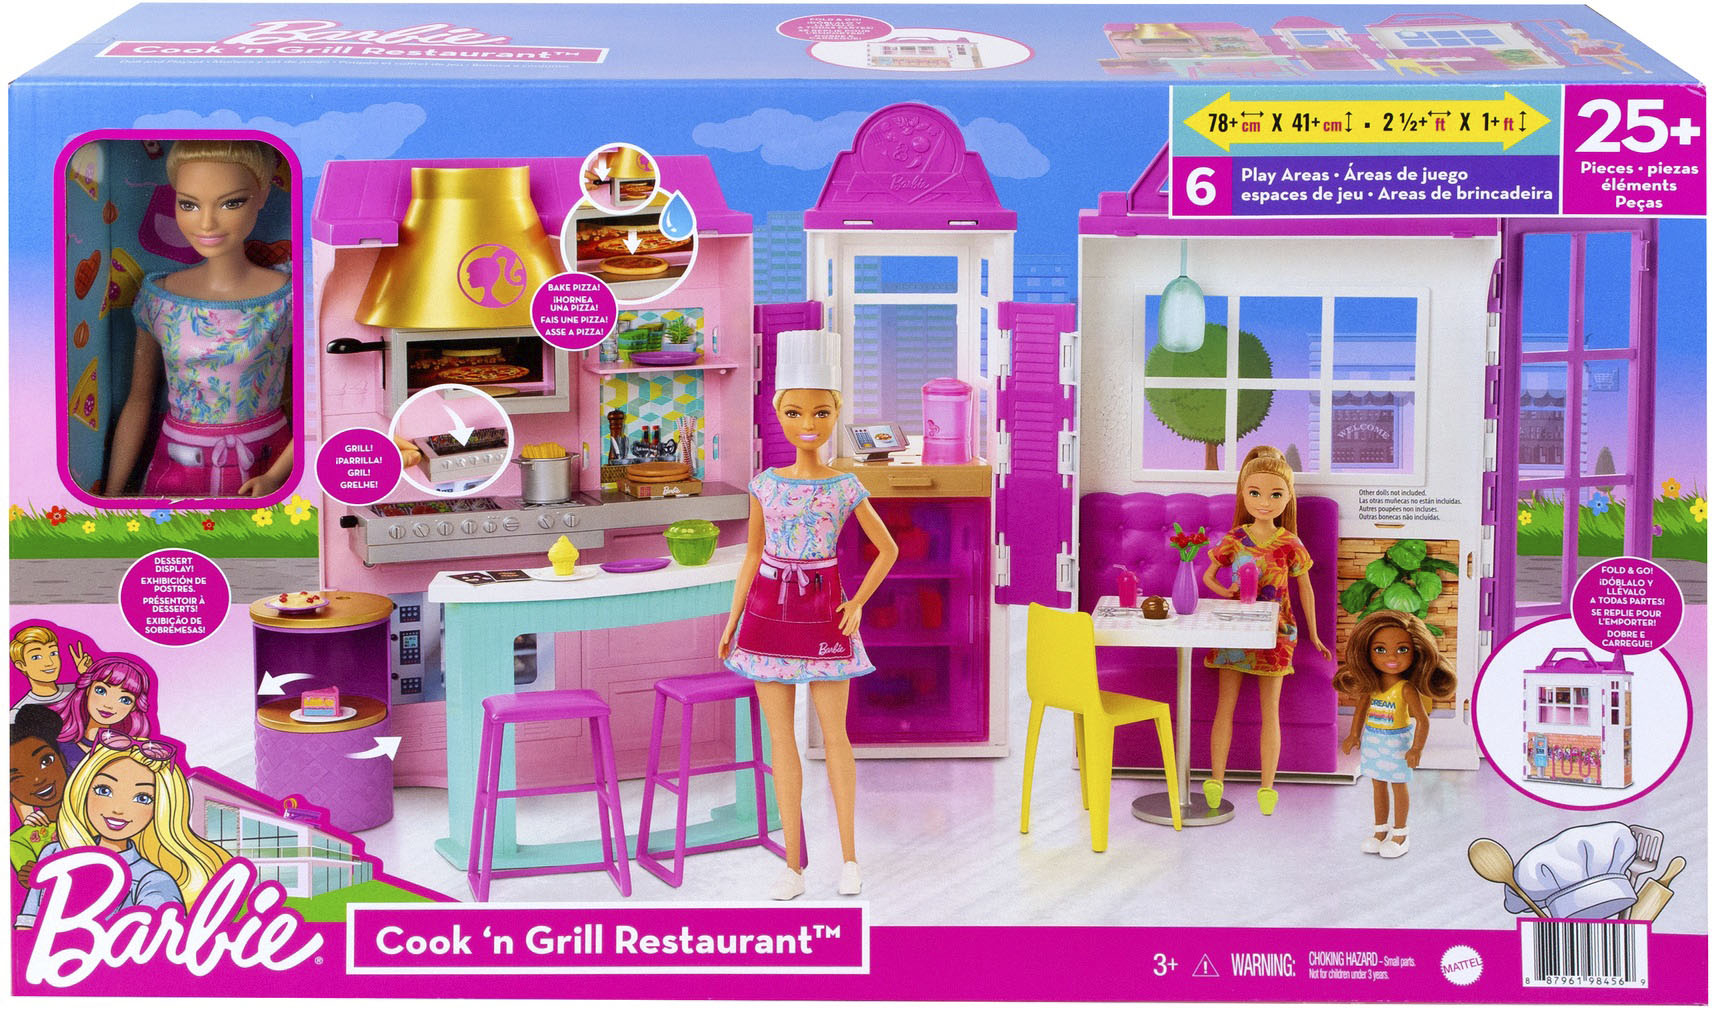 Beheren Je zal beter worden stopcontact Barbie Cook 'n Grill Restaurant Playset Pink/White HBB91 - Best Buy